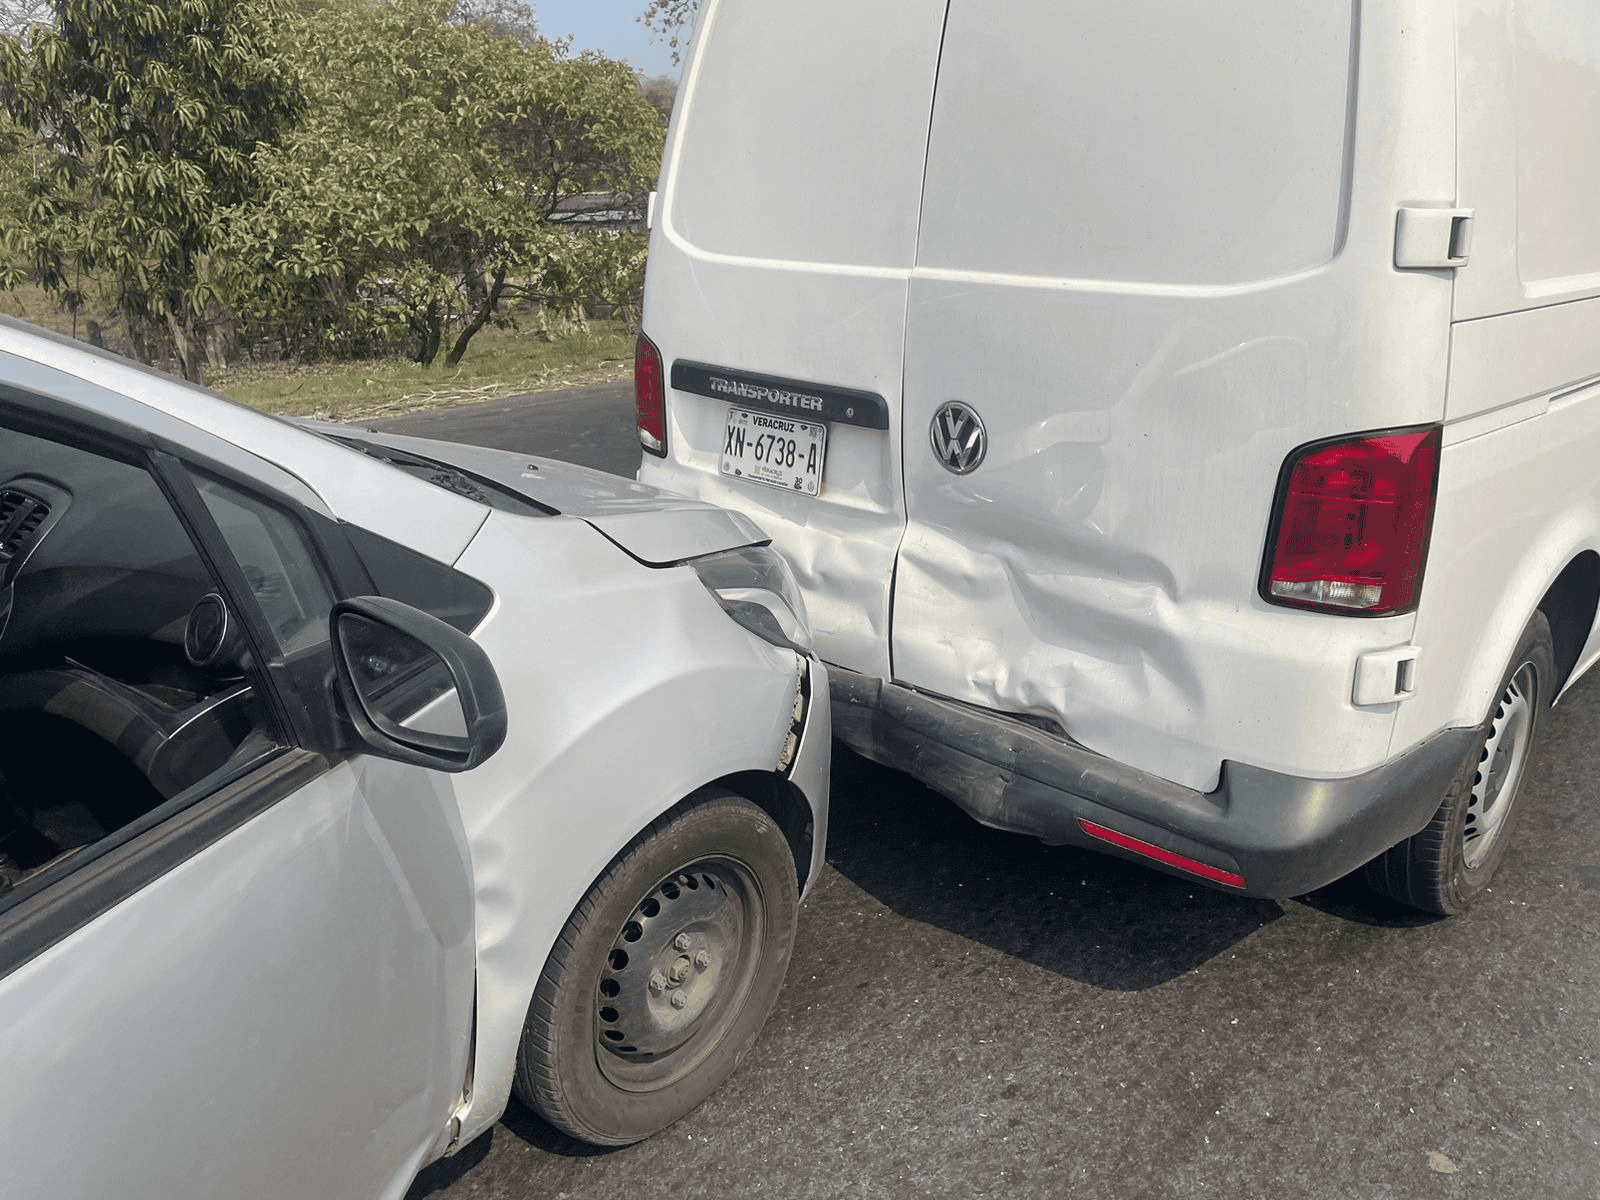 Carambola en carretera federal 145 deja tres vehículos dañados y lesiones leves